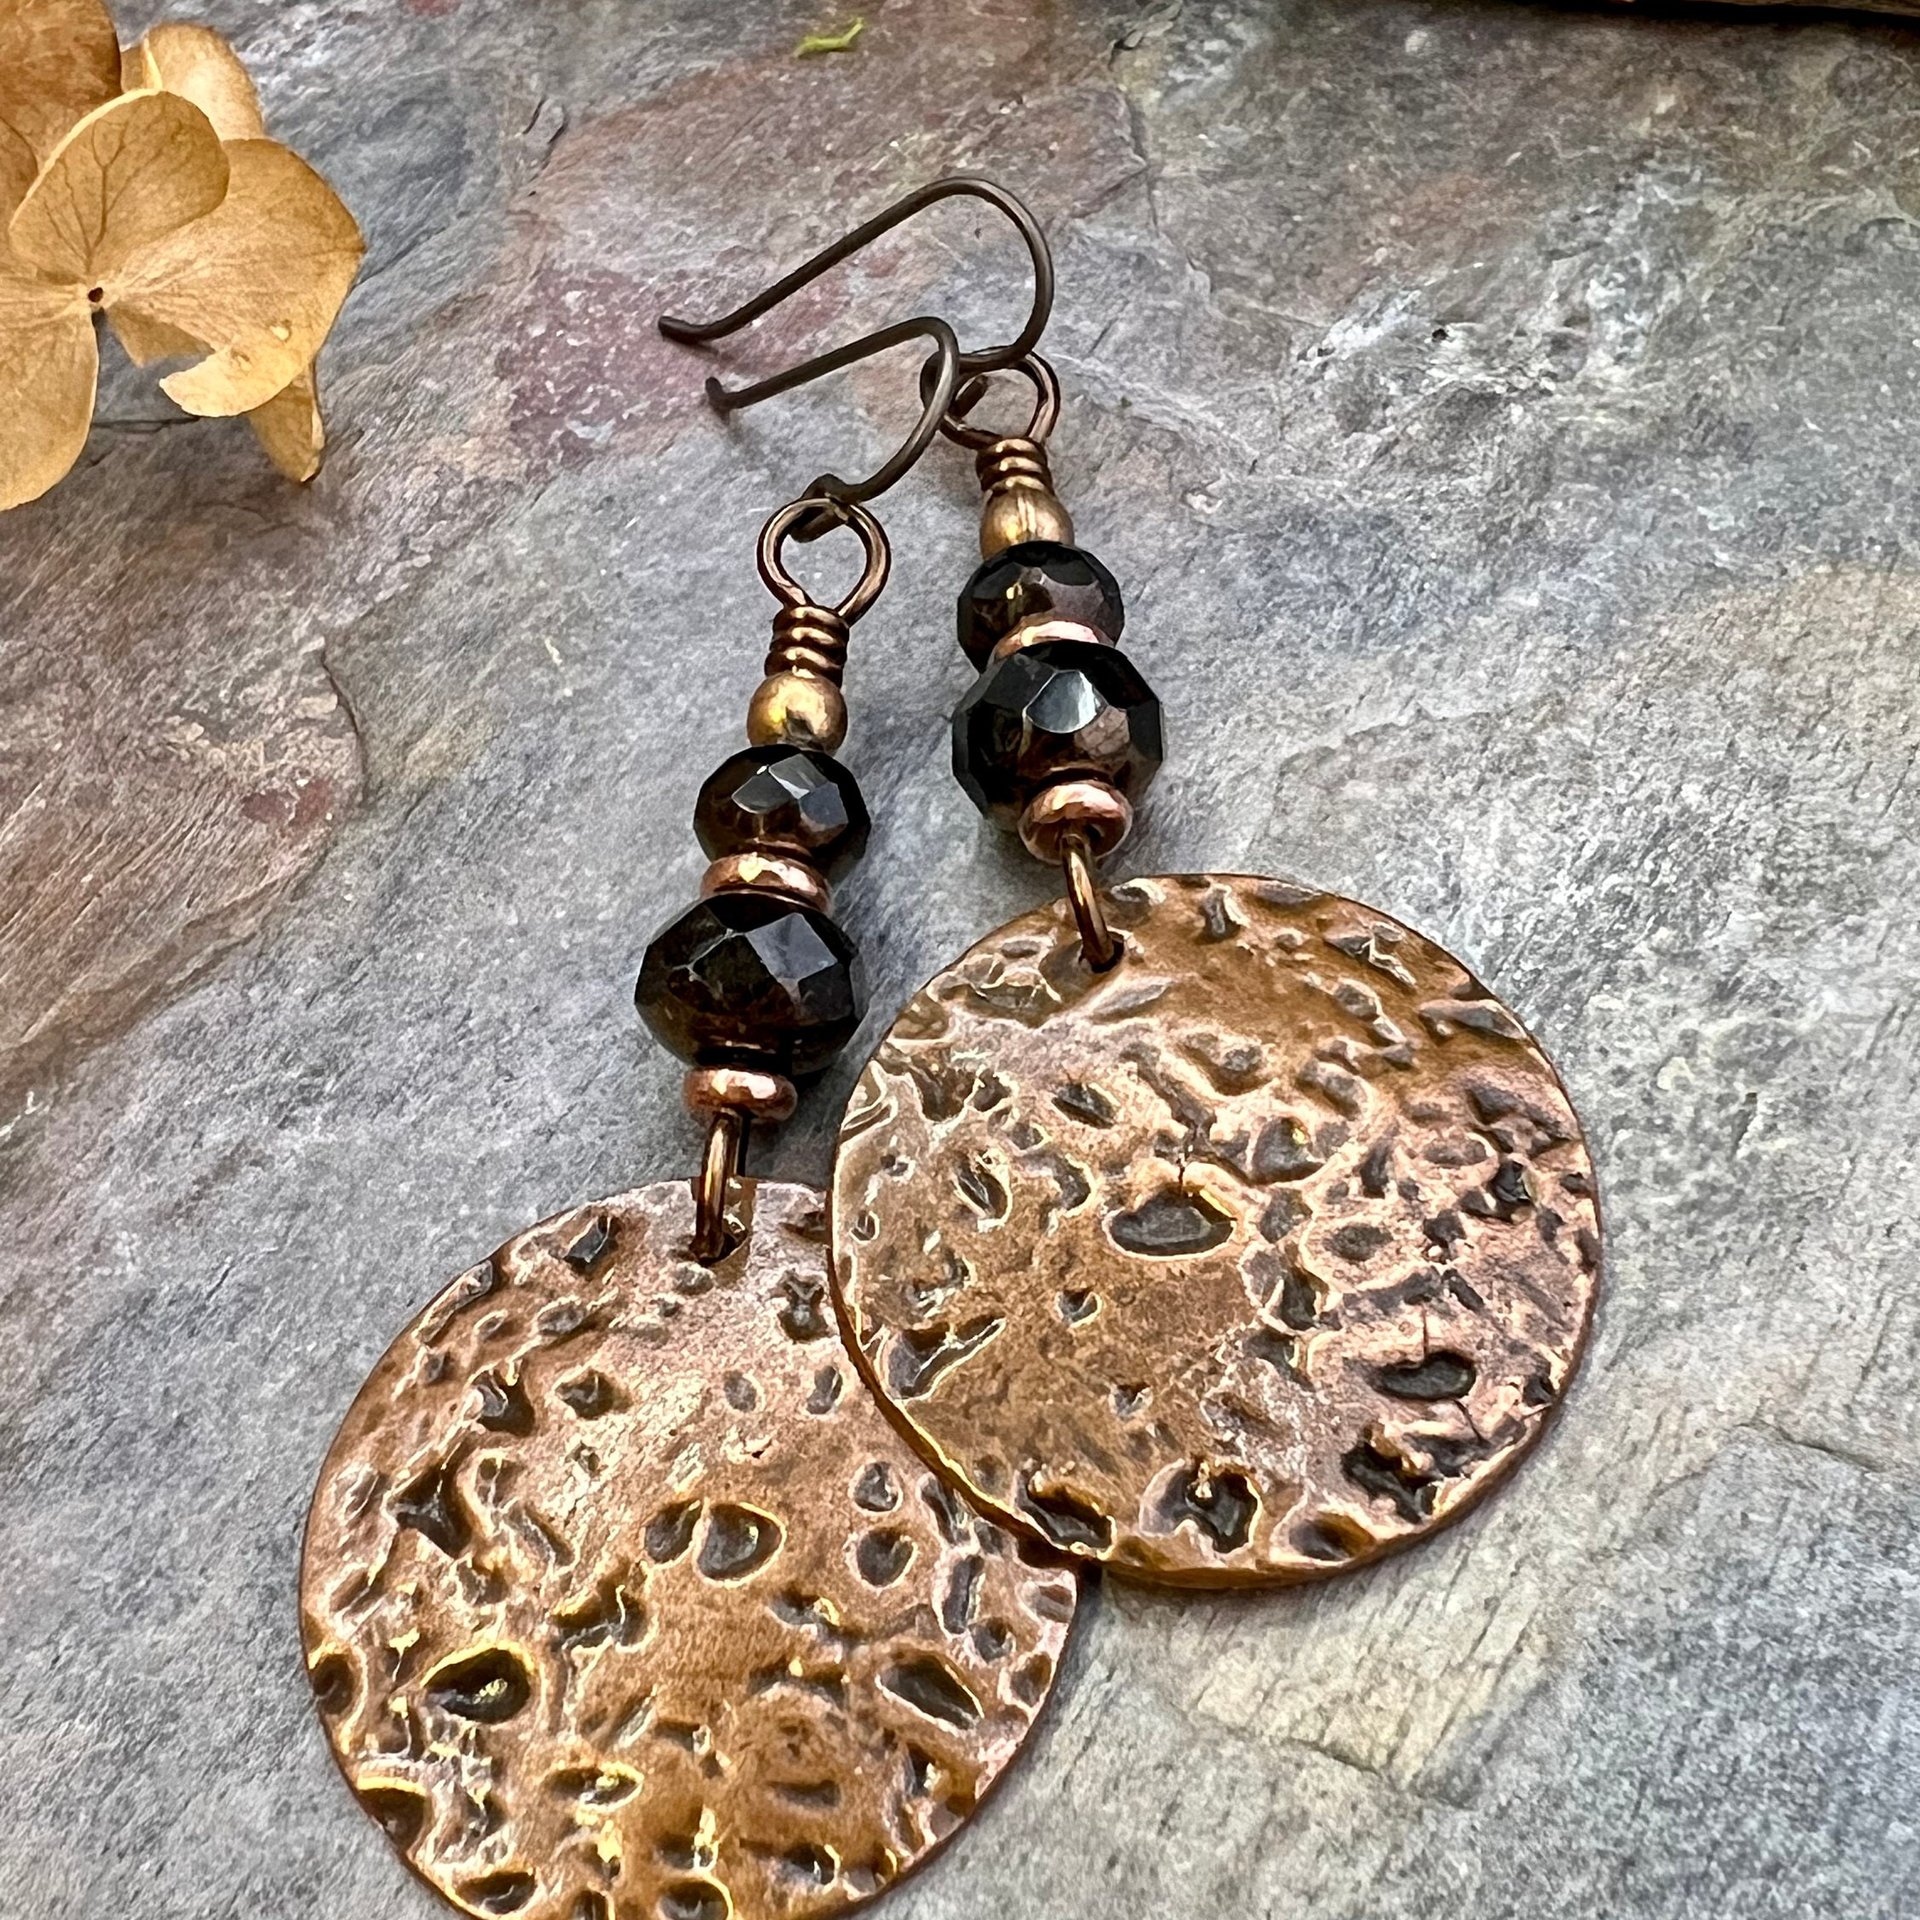 Copper Disc Earrings, Czech Glass Beads, Hypoallergenic Ear Wires, Earthy Tribal, Boho Chic Style, Large Dangle Discs, Handmade Metal Art